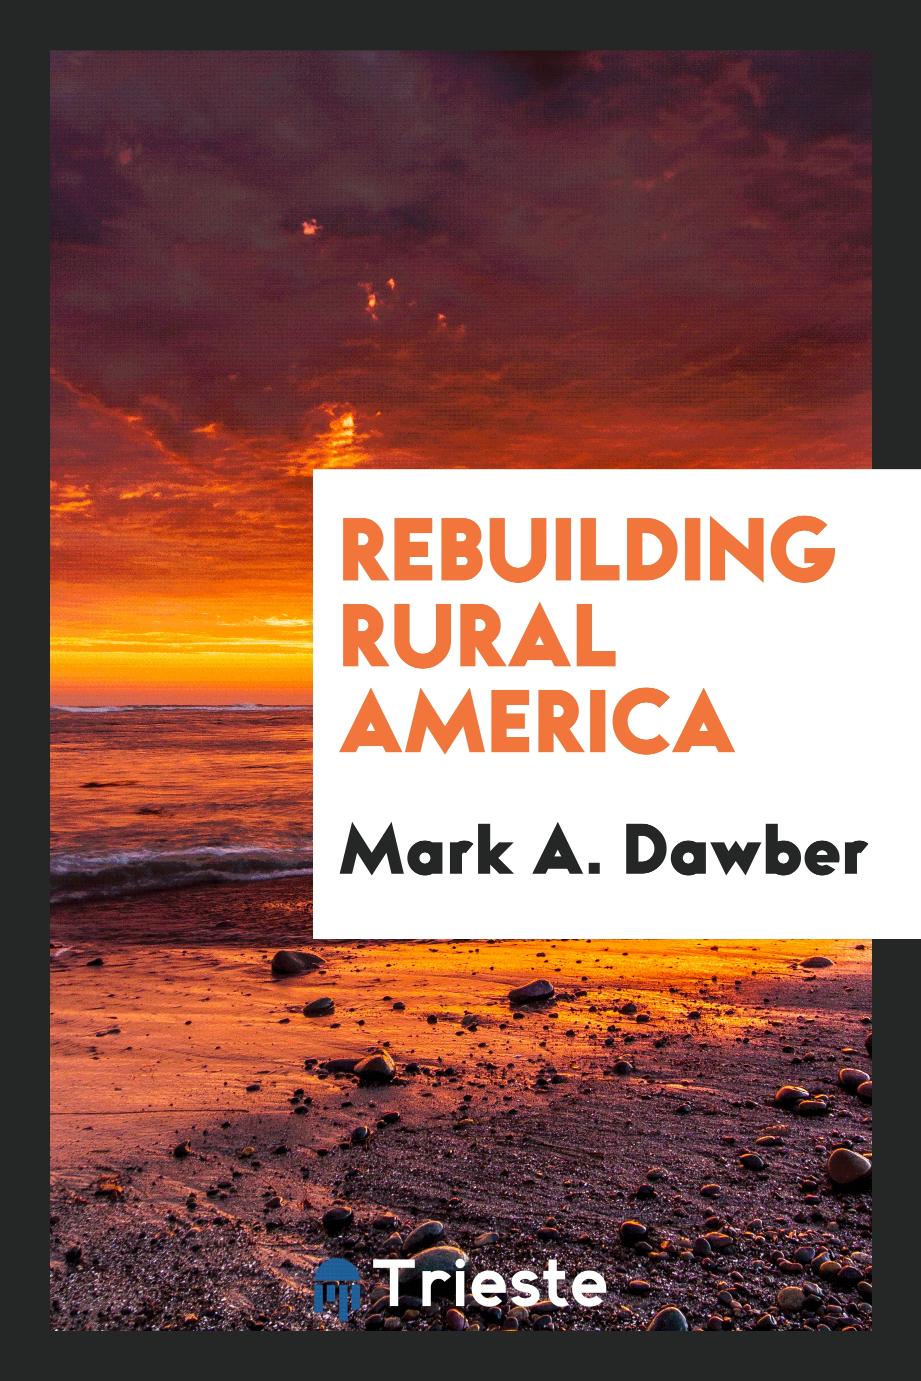 Rebuilding rural America